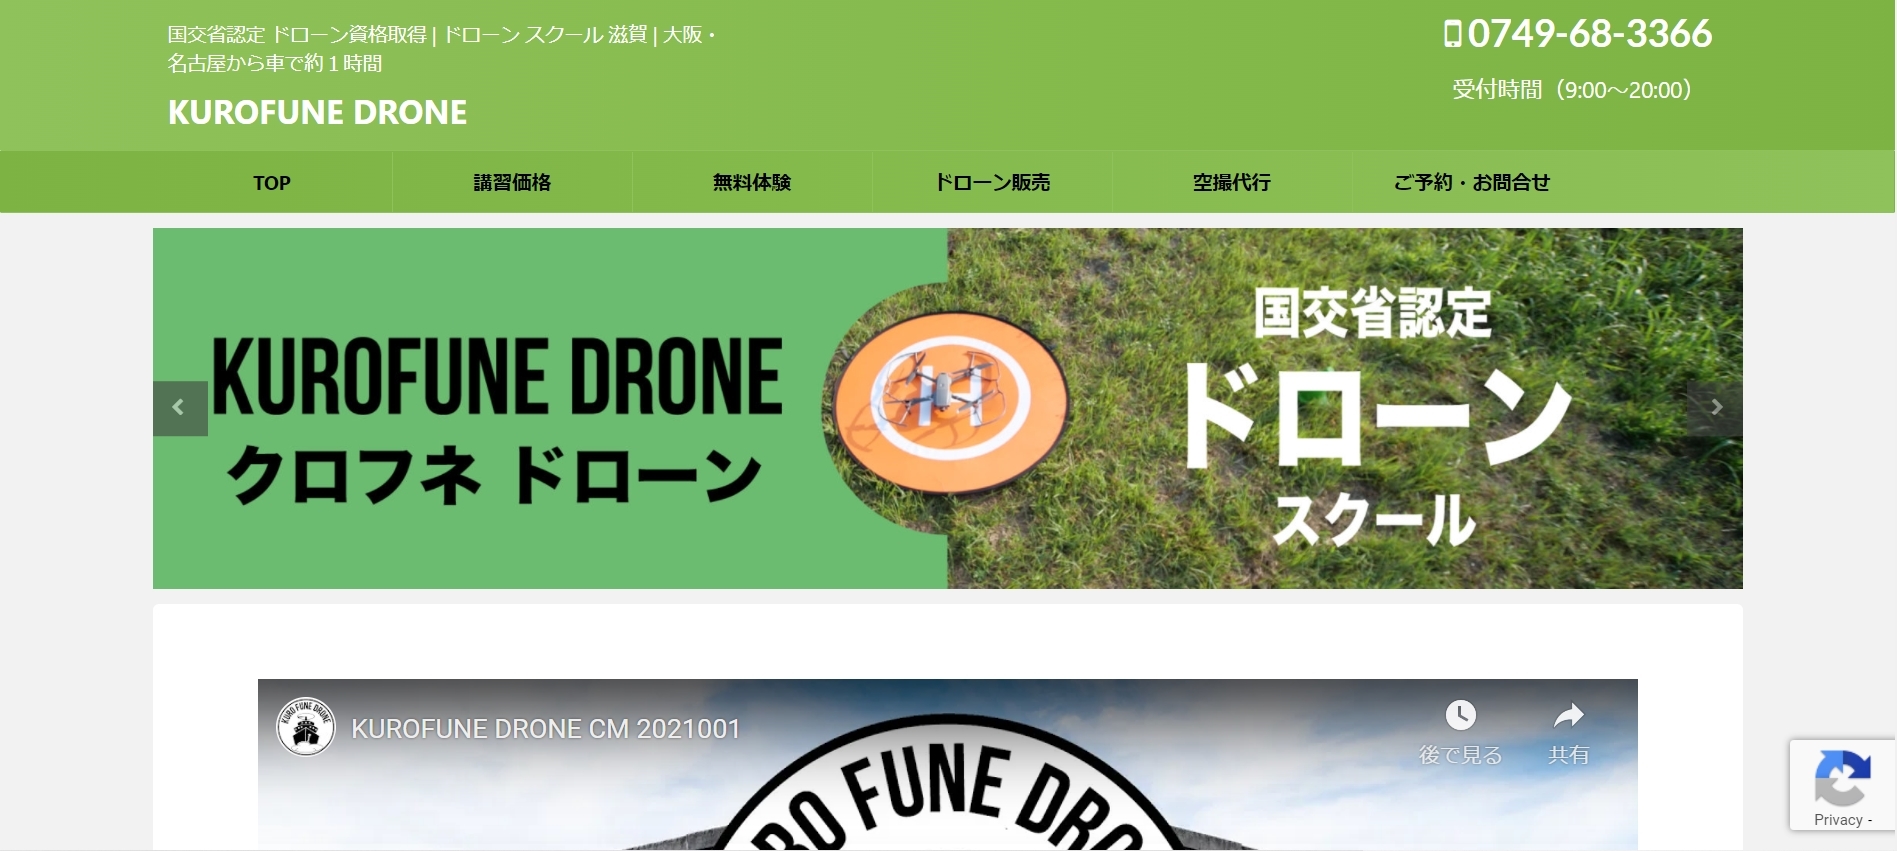 KUROFUNE DRONE (クロフネドローン)